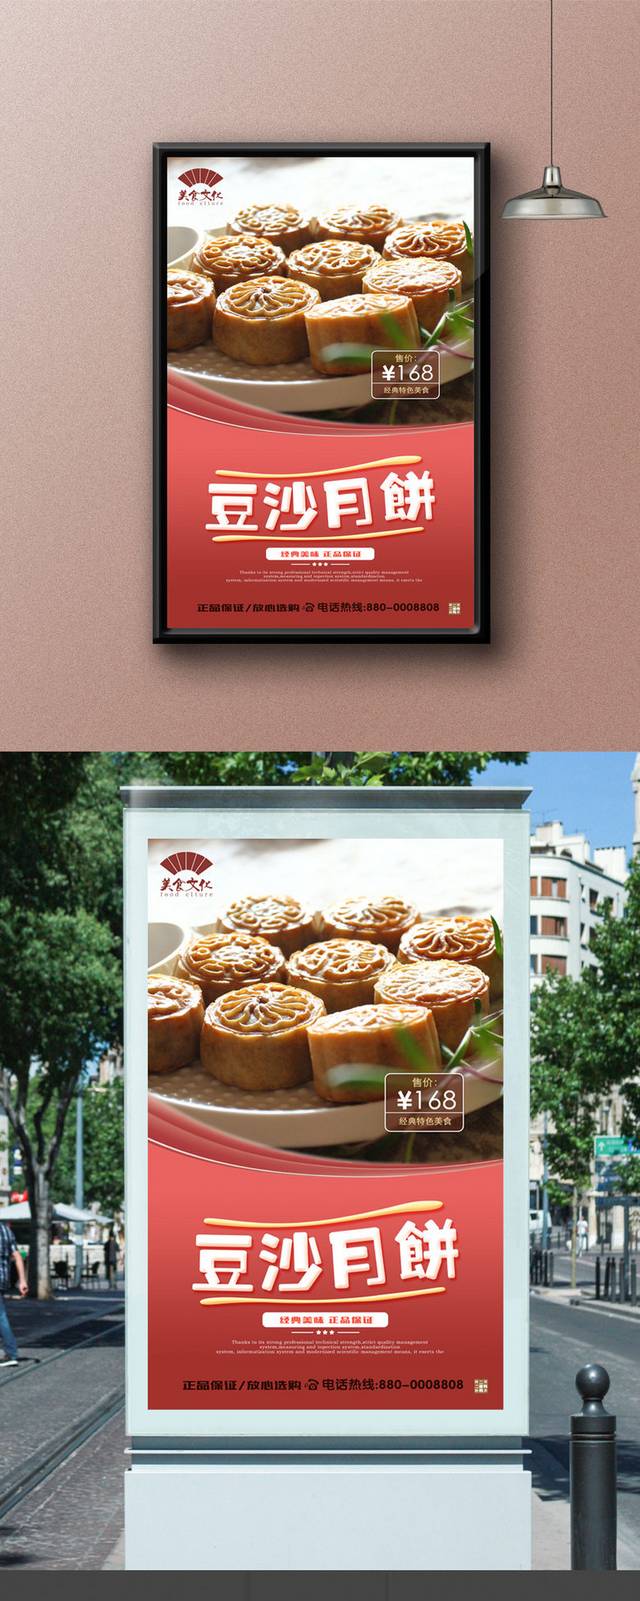 高档豆沙月饼宣传海报设计psd